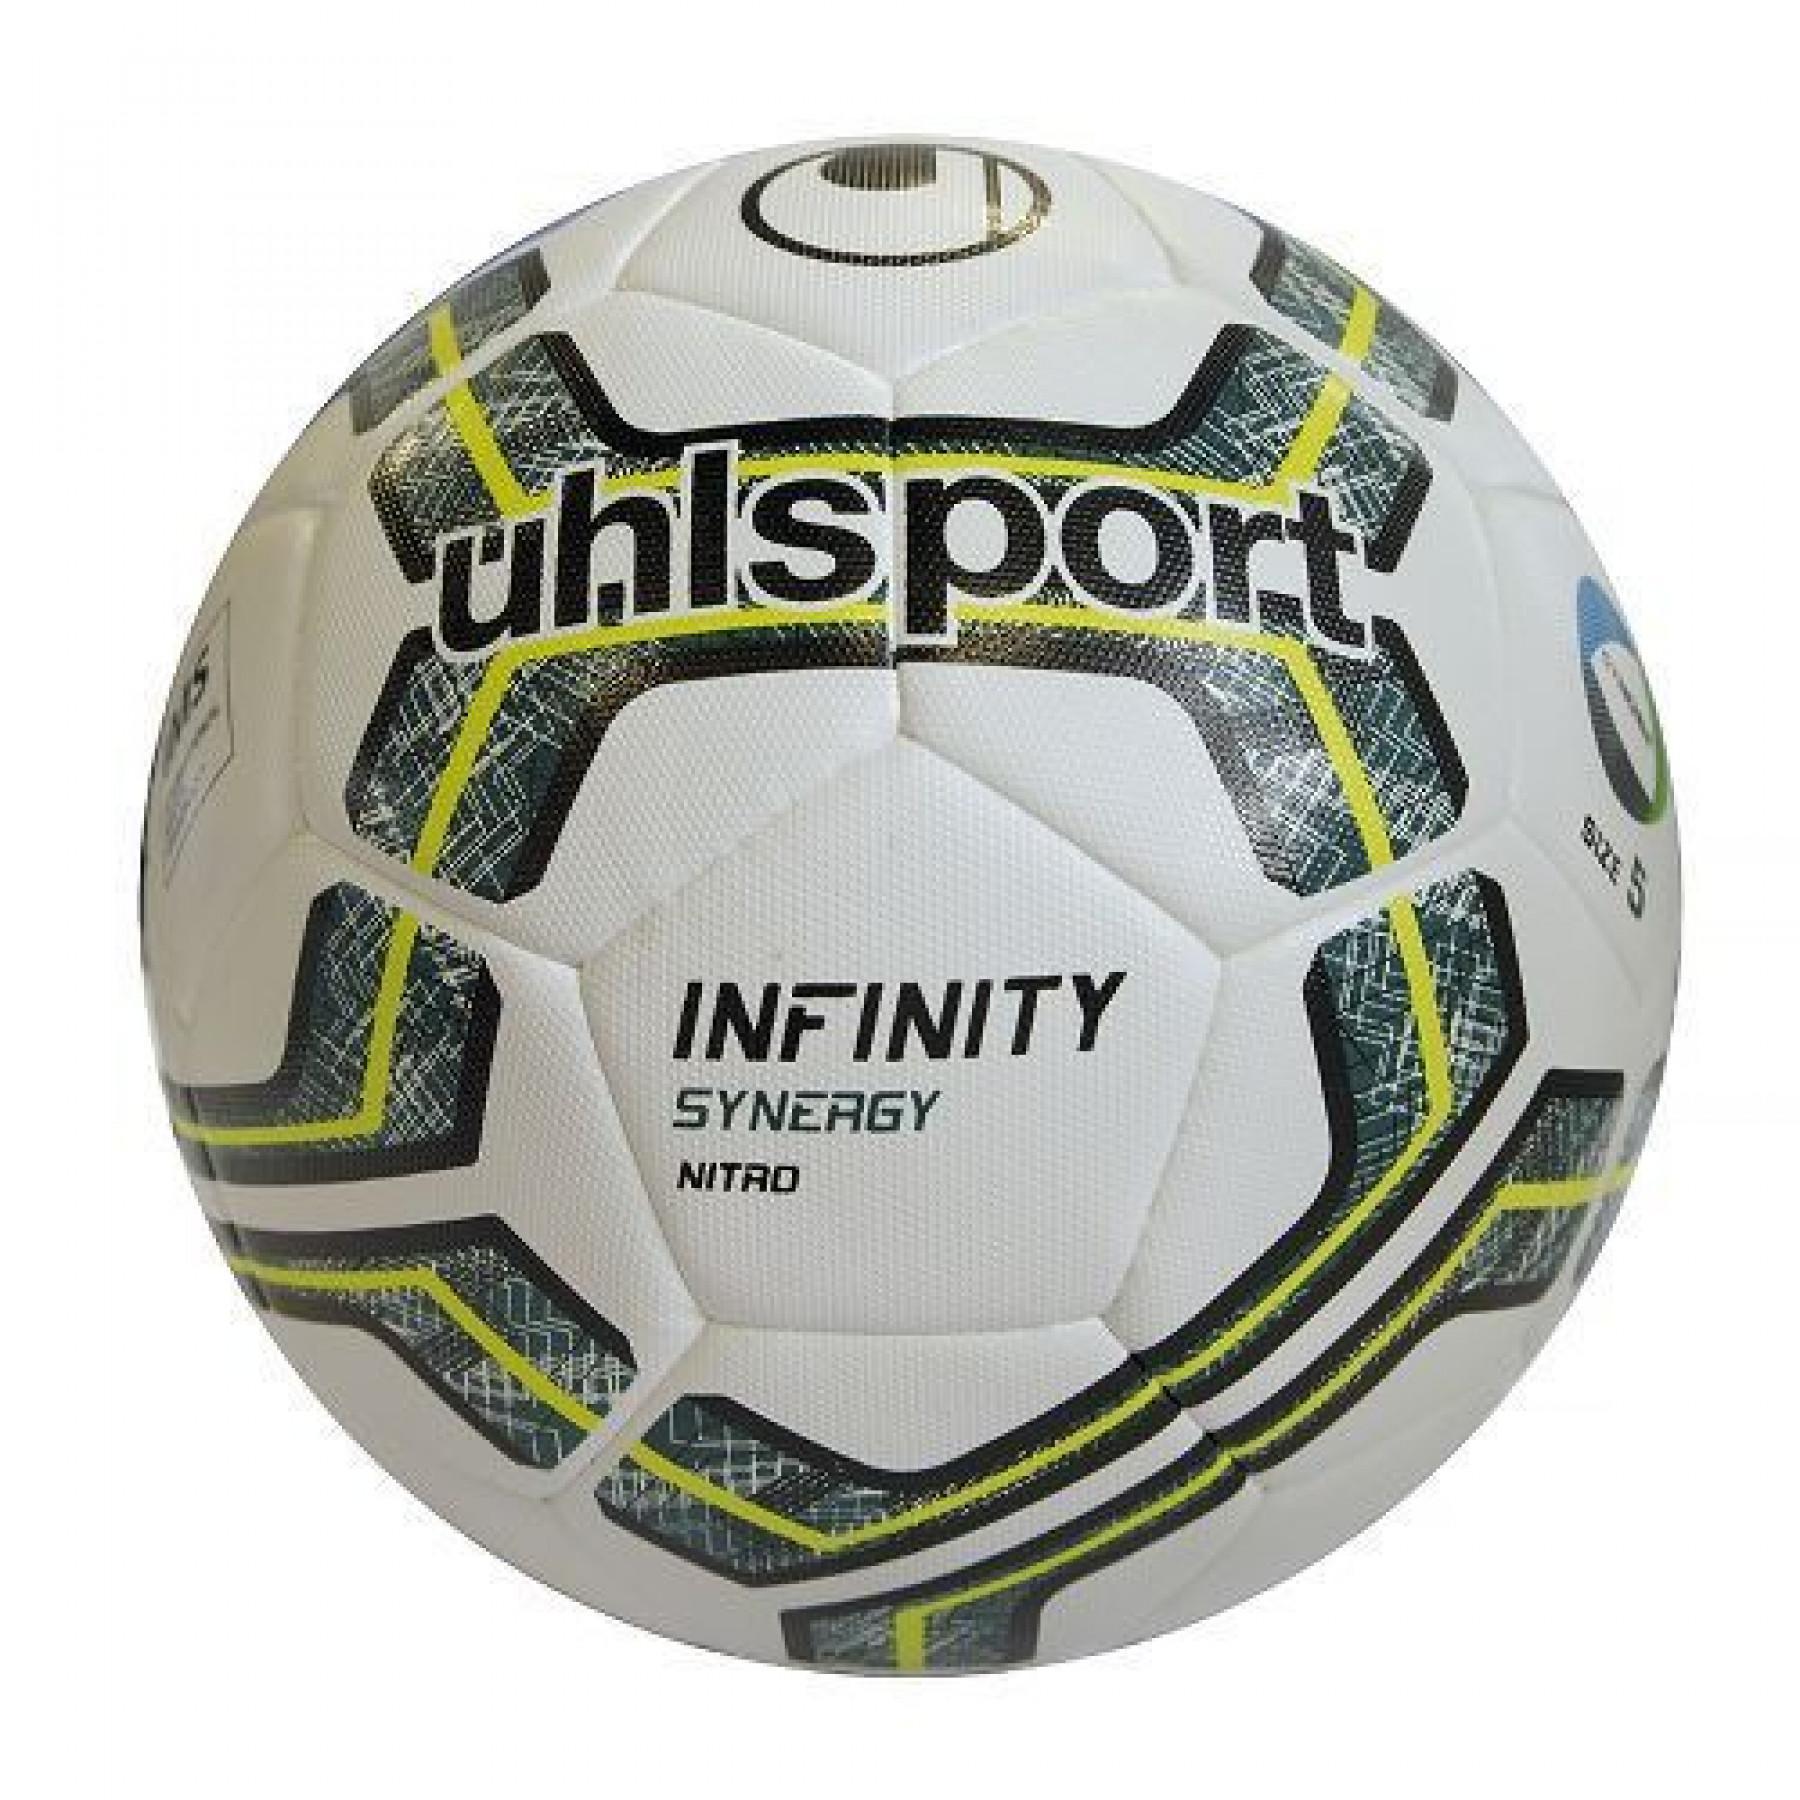 Confezione da 10 palloncini Uhlsport Infinity synergy Nitro 2.0